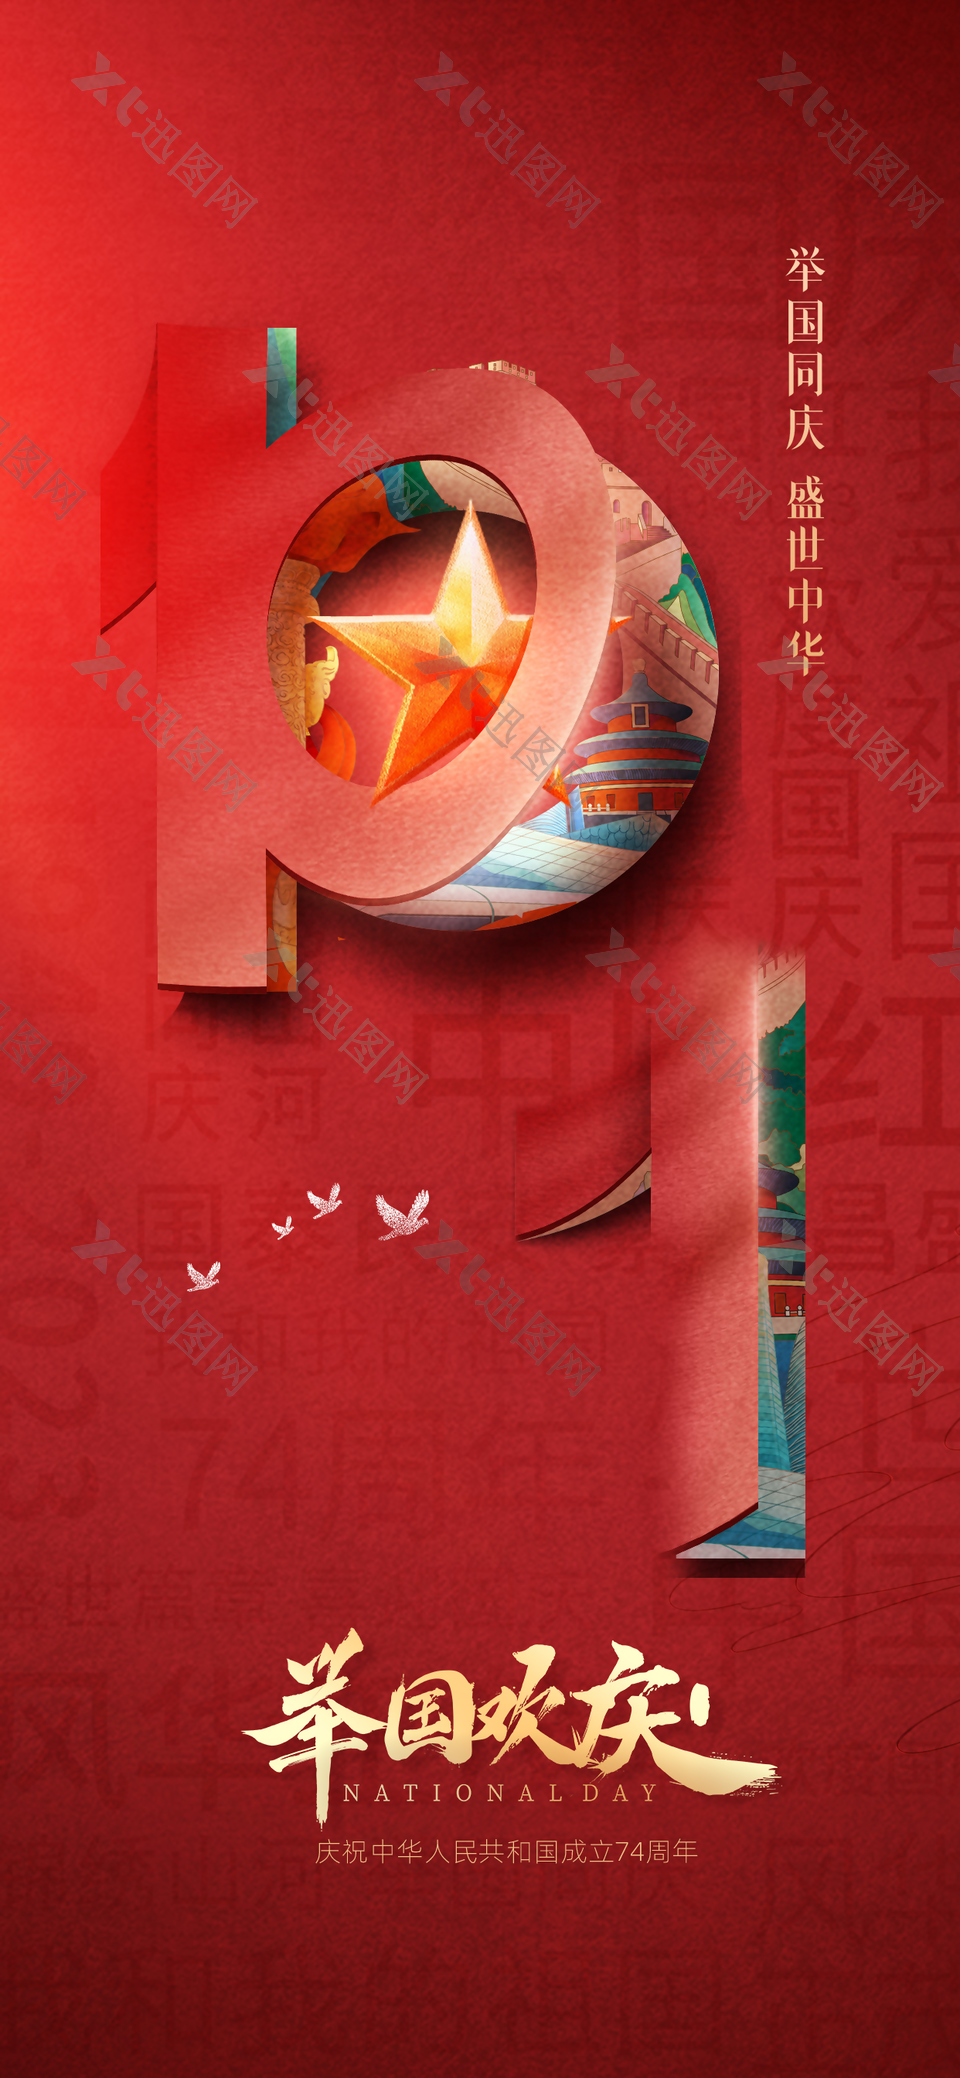 10.1举国欢庆红色创意立体元素海报设计